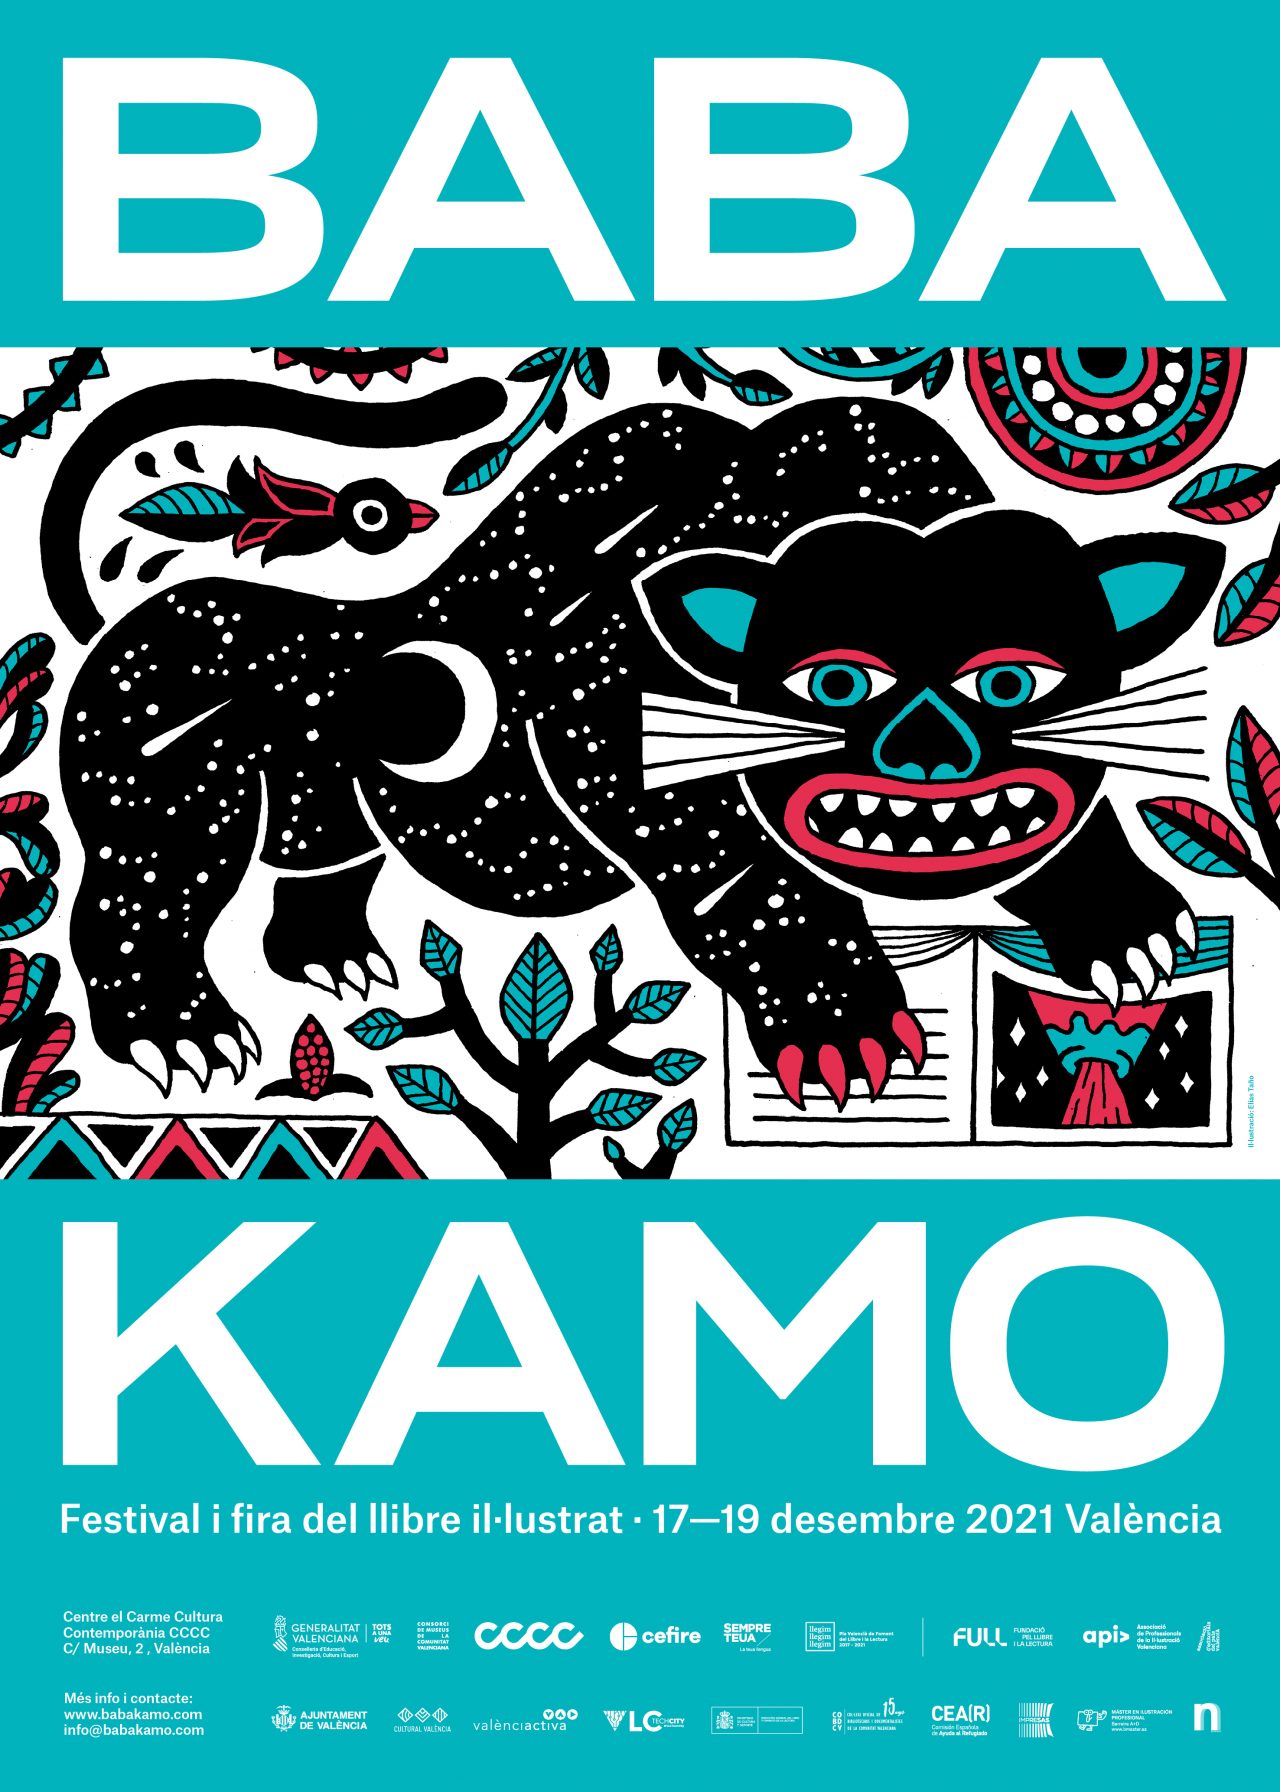 El festival Baba Kamo reivindica las periferias y la libertad a lomos de una pantera ilustrada por Elías Taño